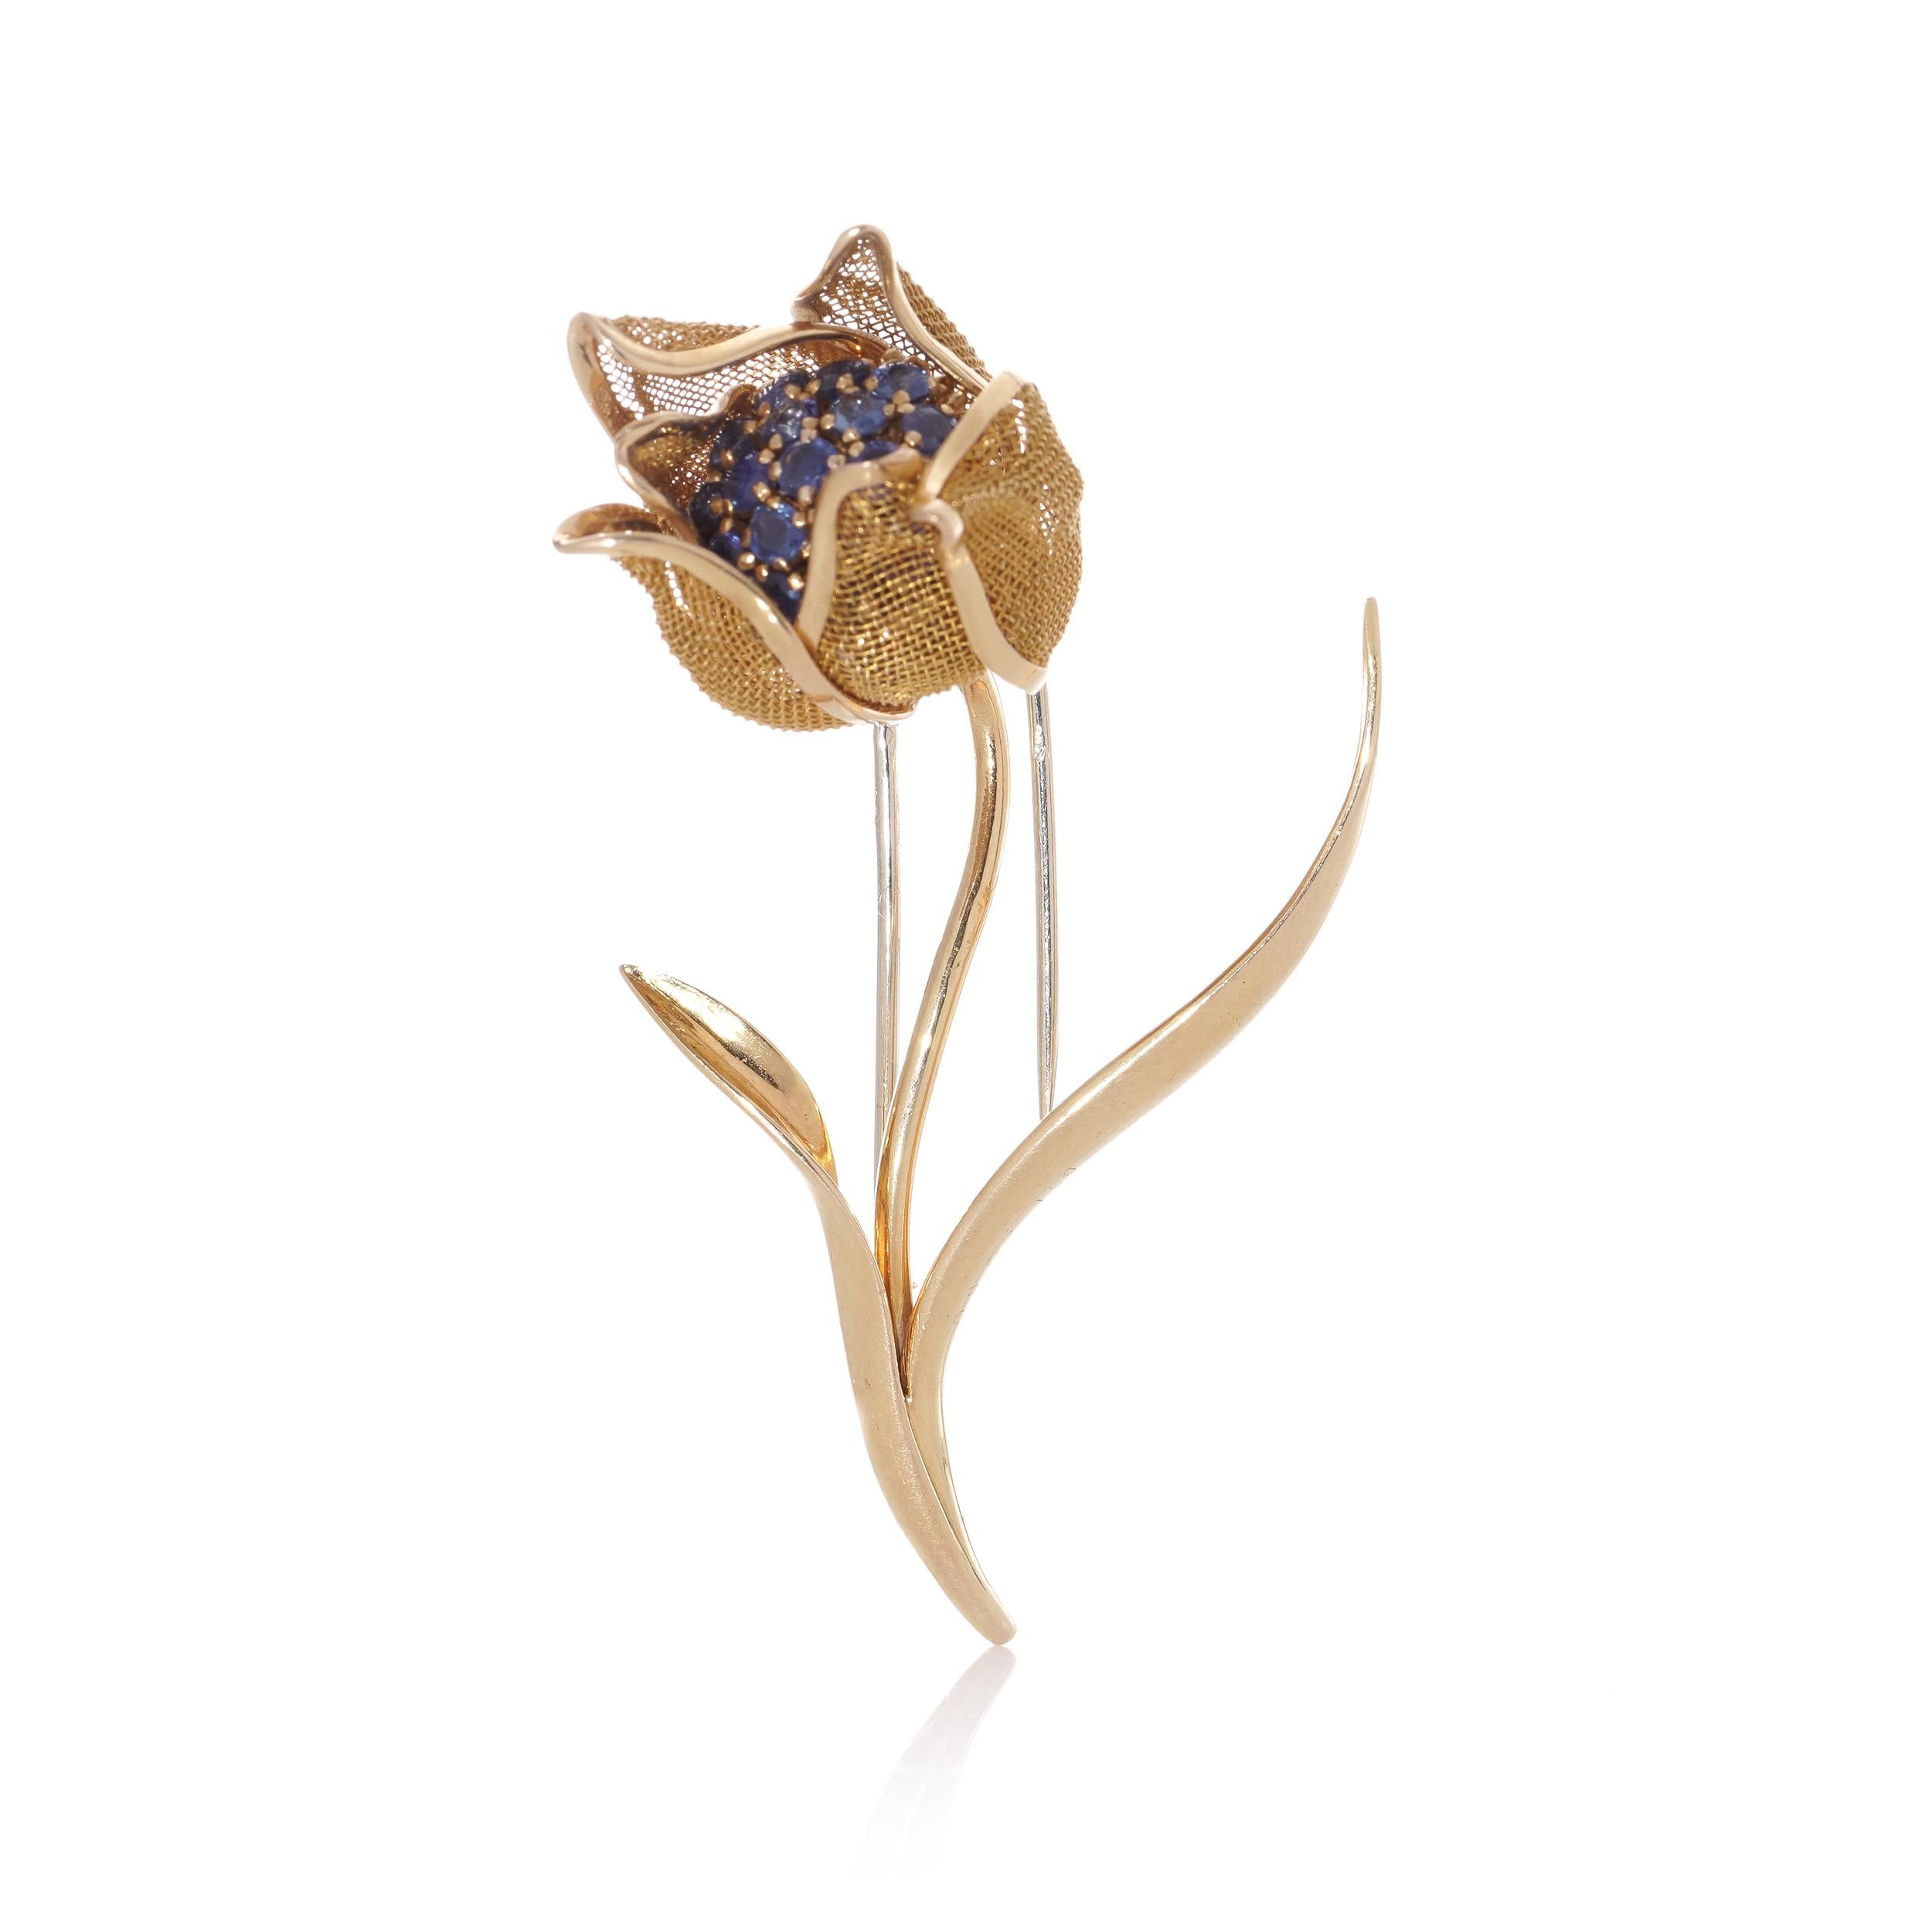 Diese exquisite Brosche zeigt ein bezauberndes Blumendesign aus 18-karätigem Gelbgold mit aufklappbaren Blütenblättern, die sorgfältig mit blauen Saphiren mit einem geschätzten Gesamtgewicht von 1,52 Karat verziert sind. Diese aus Frankreich